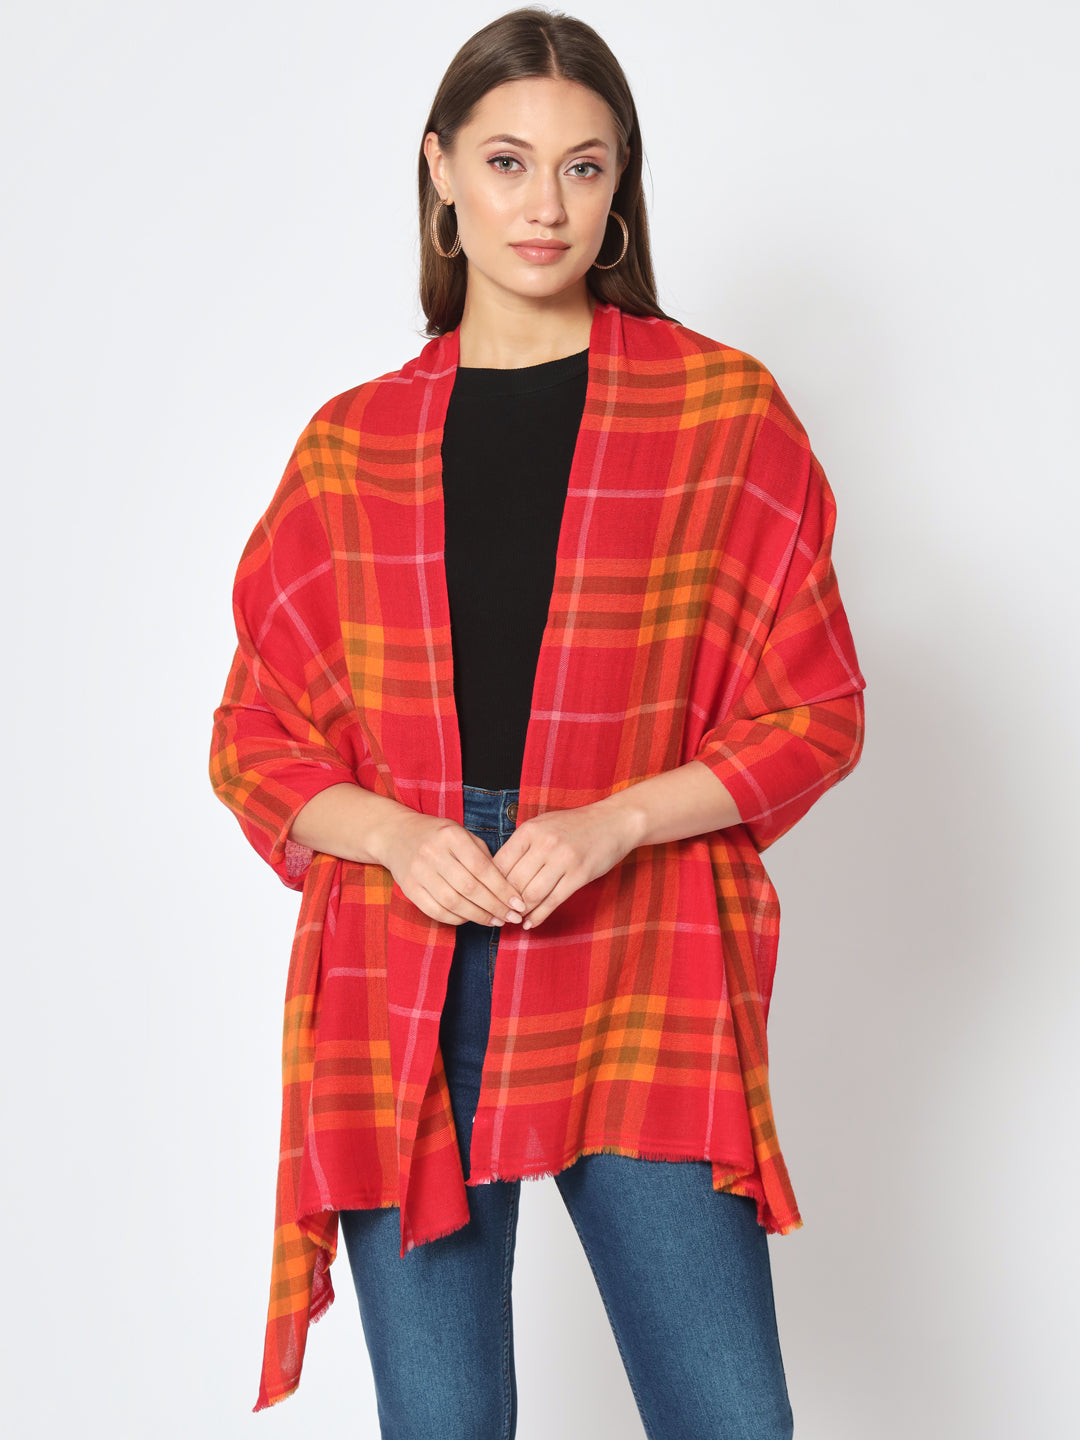 real pashmina shawl price, woolen shawl price